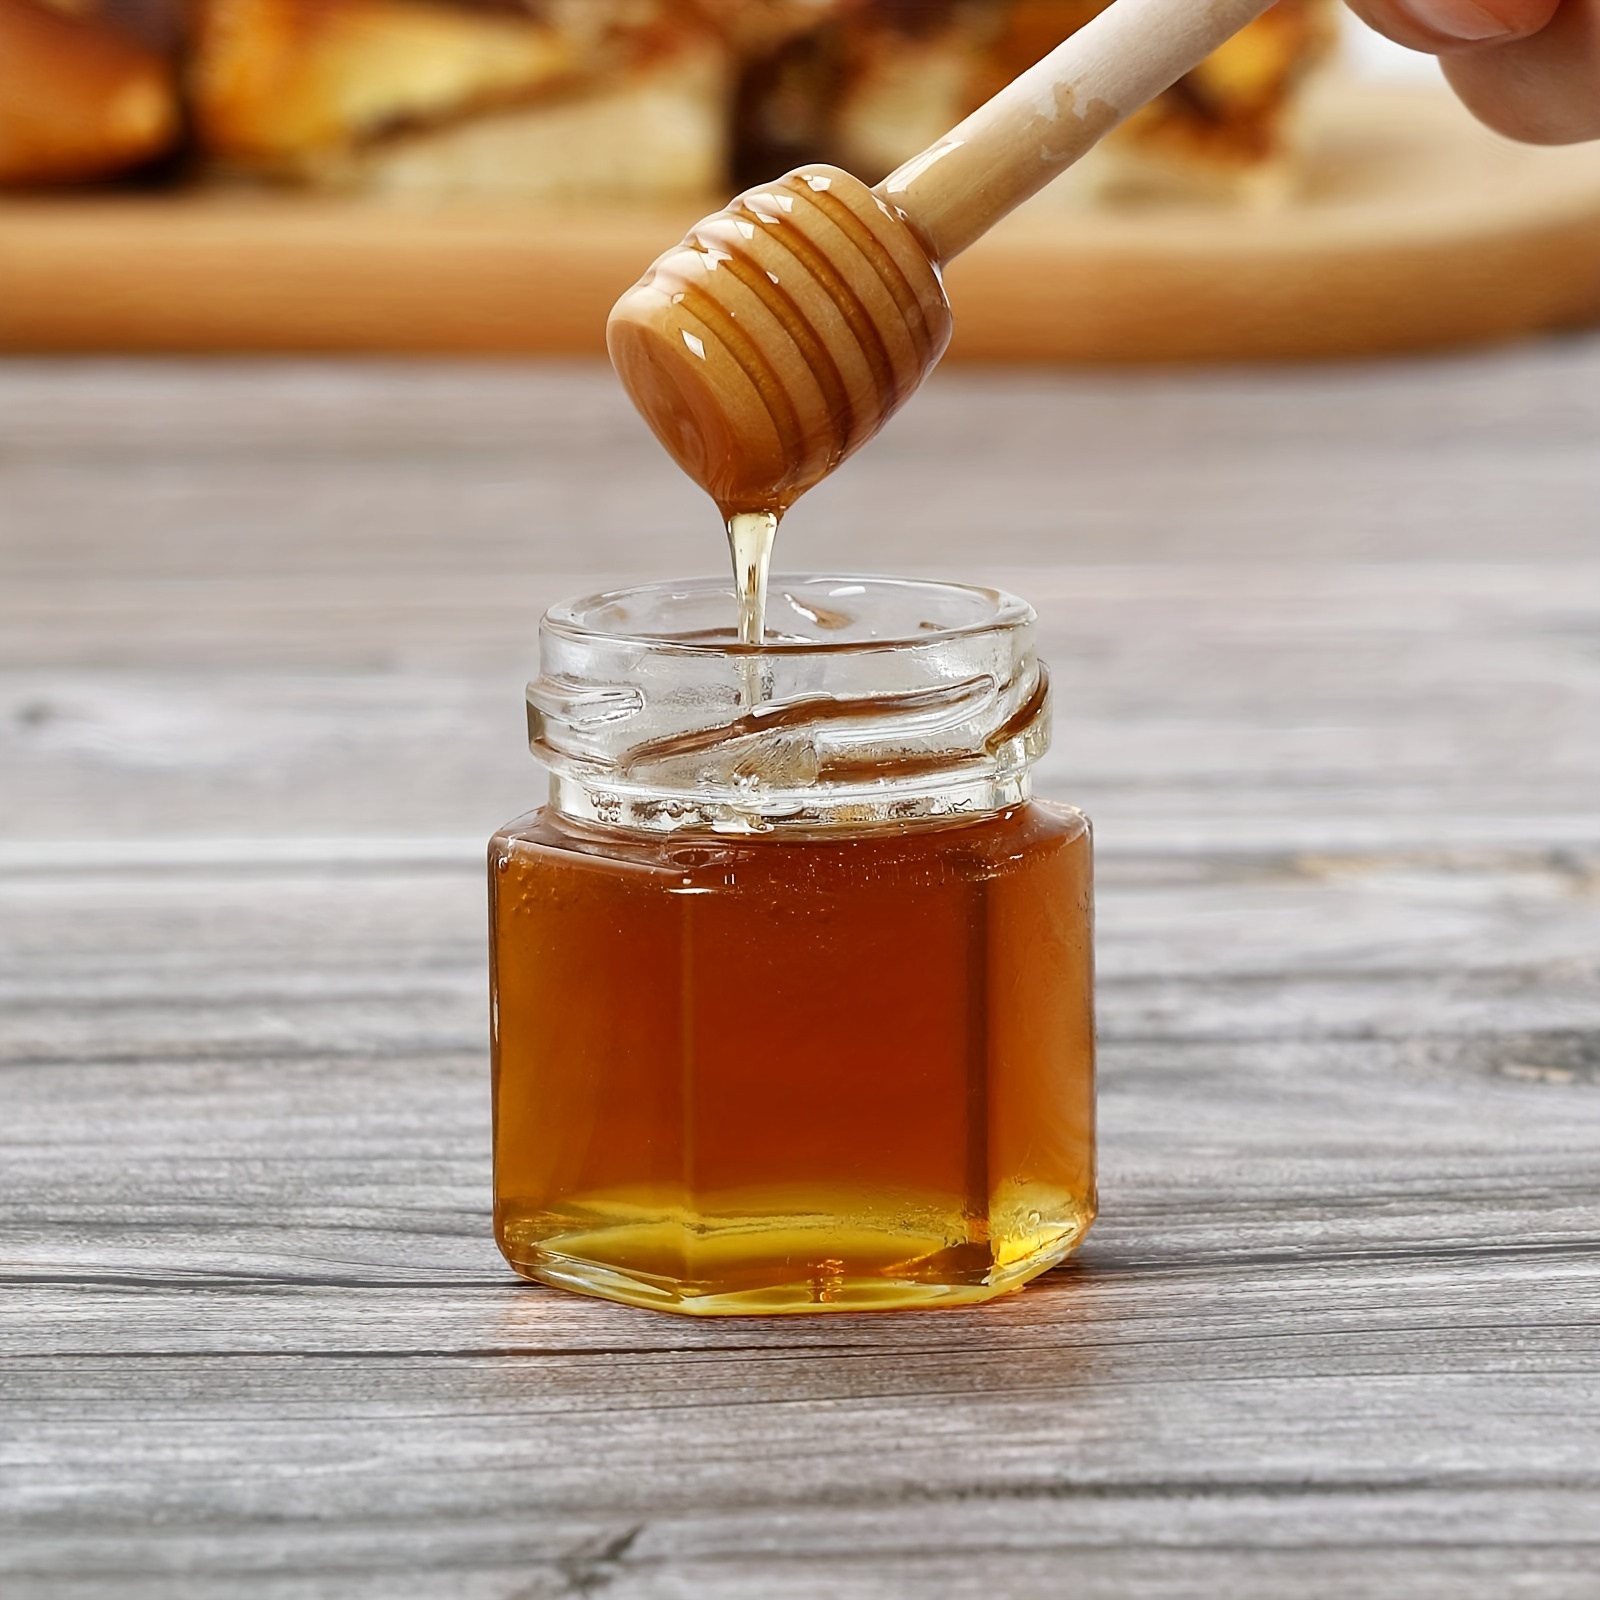 Mini tarros de miel, con cuchara de madera, tarros hexagonales de vidrio de  1.5 onzas con tapas doradas, colgantes de abeja dorada, yute decorativo